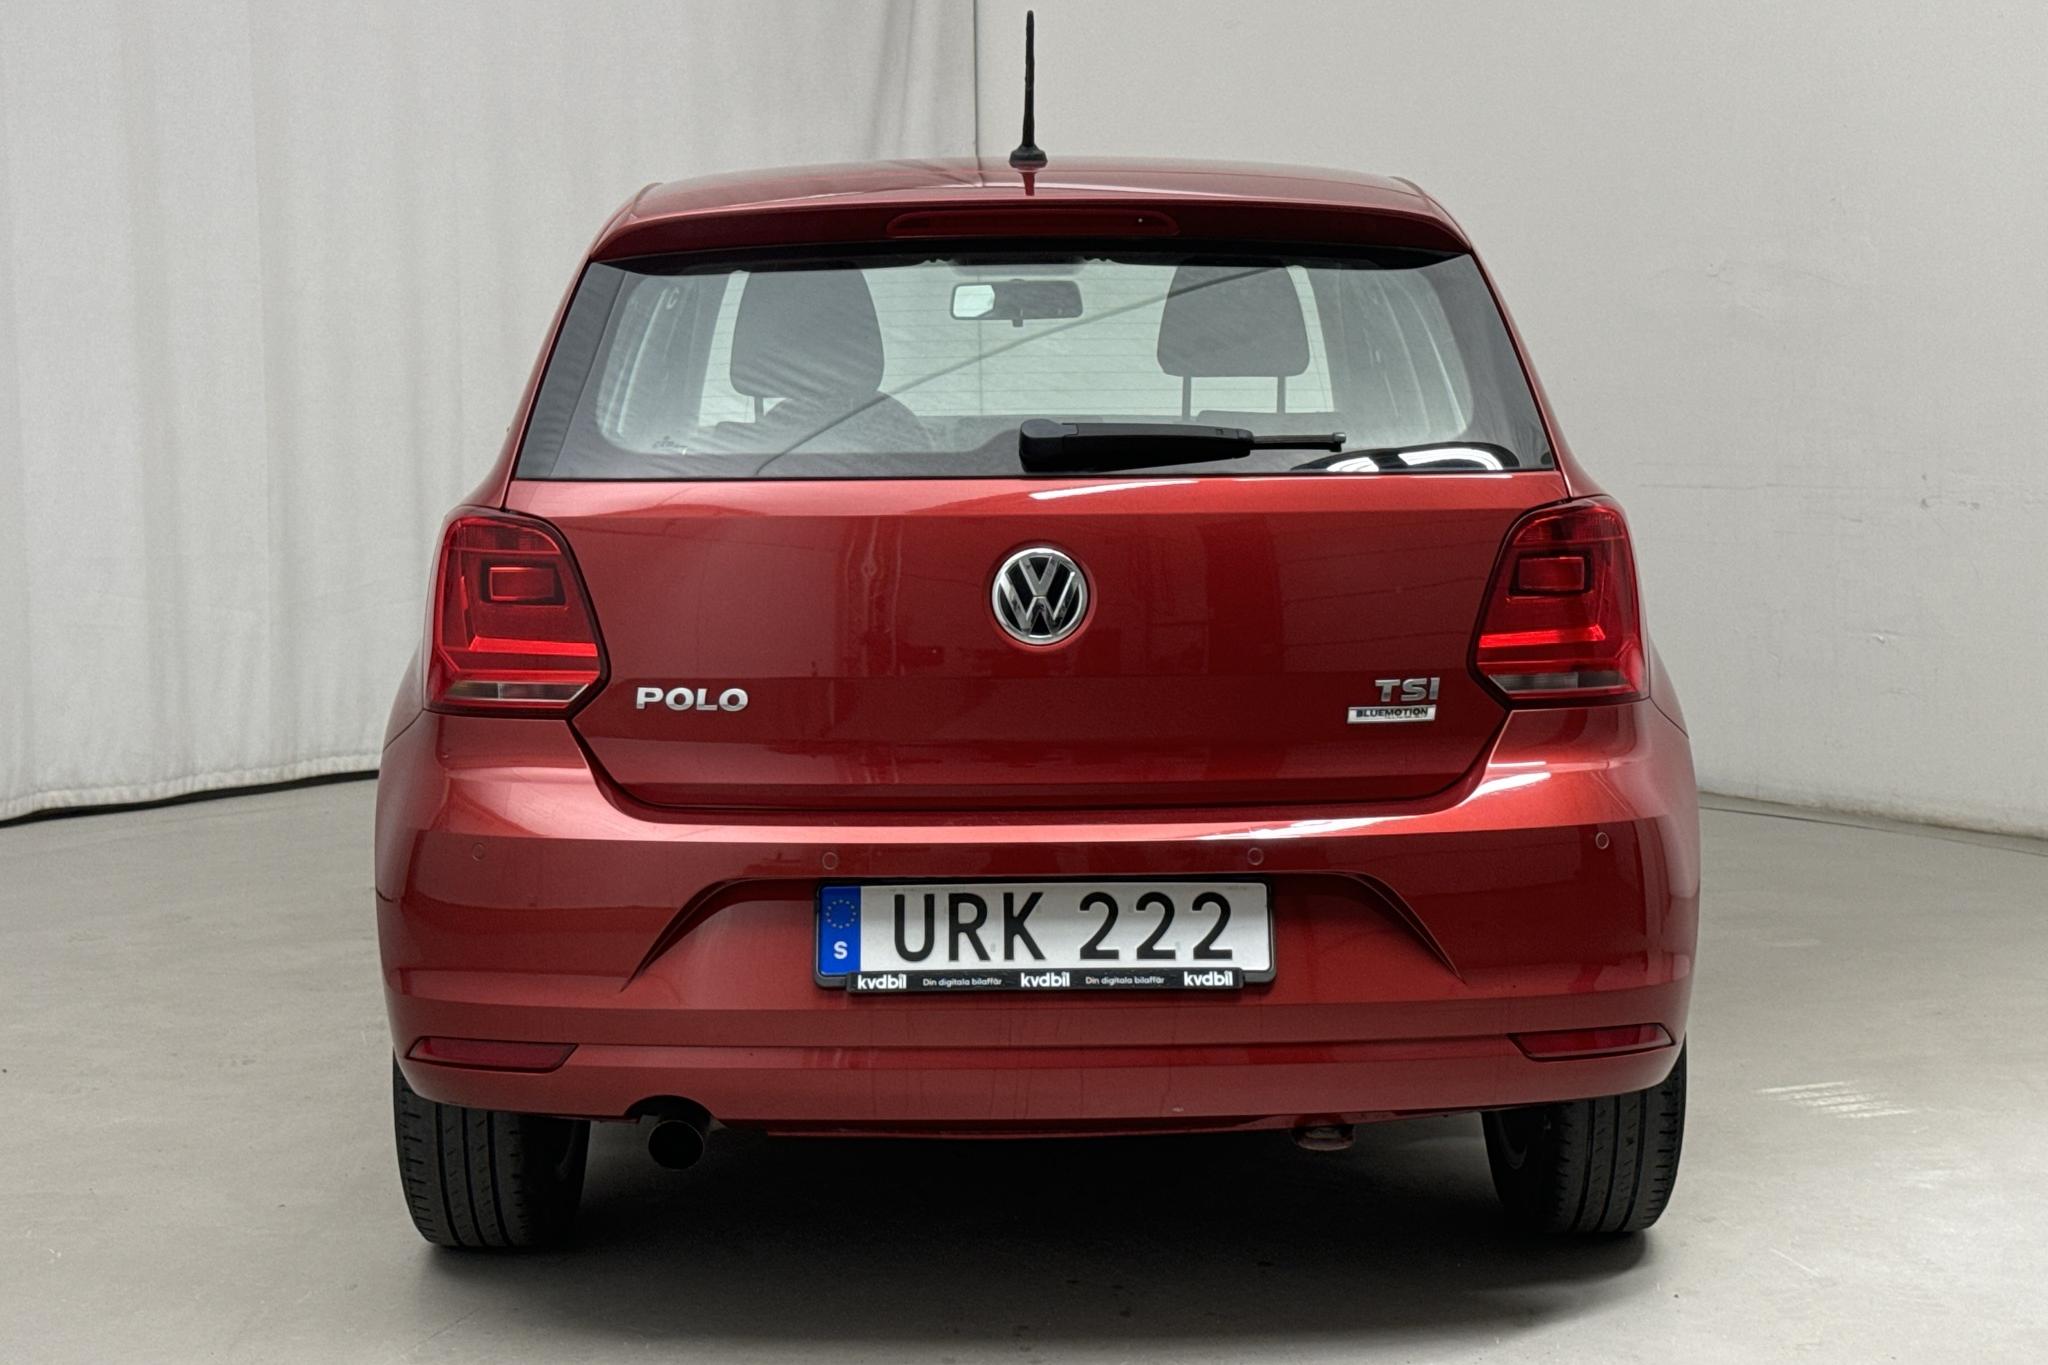 VW Polo 1.2 TSI 5dr (90hk) - 114 190 km - Manualna - czerwony - 2015